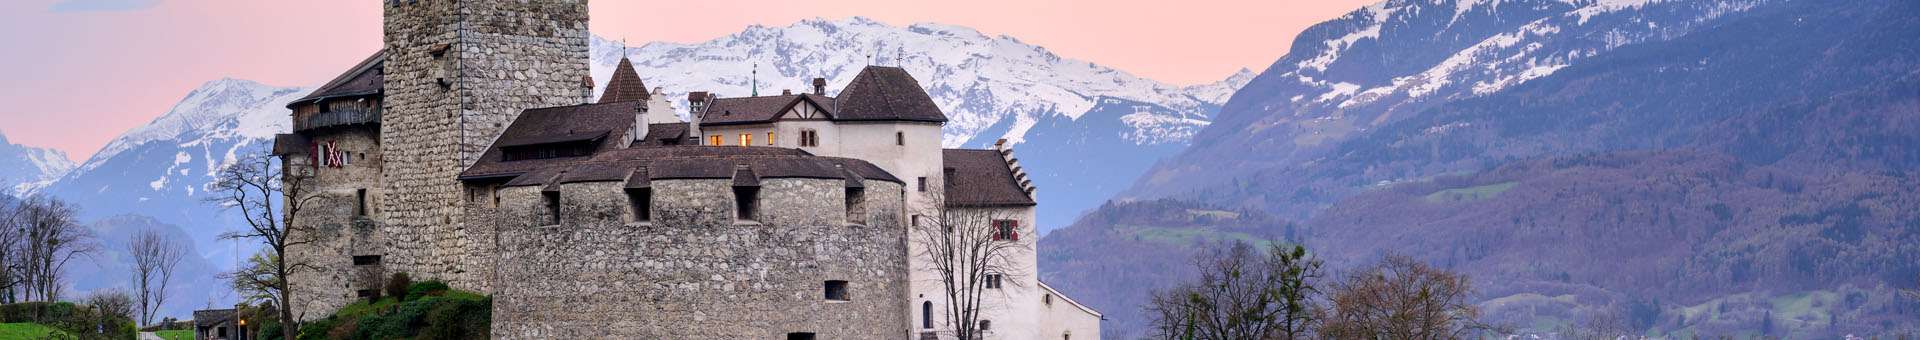 Pesquisar informações WHOIS sobre nomes de dominio em Liechtenstein